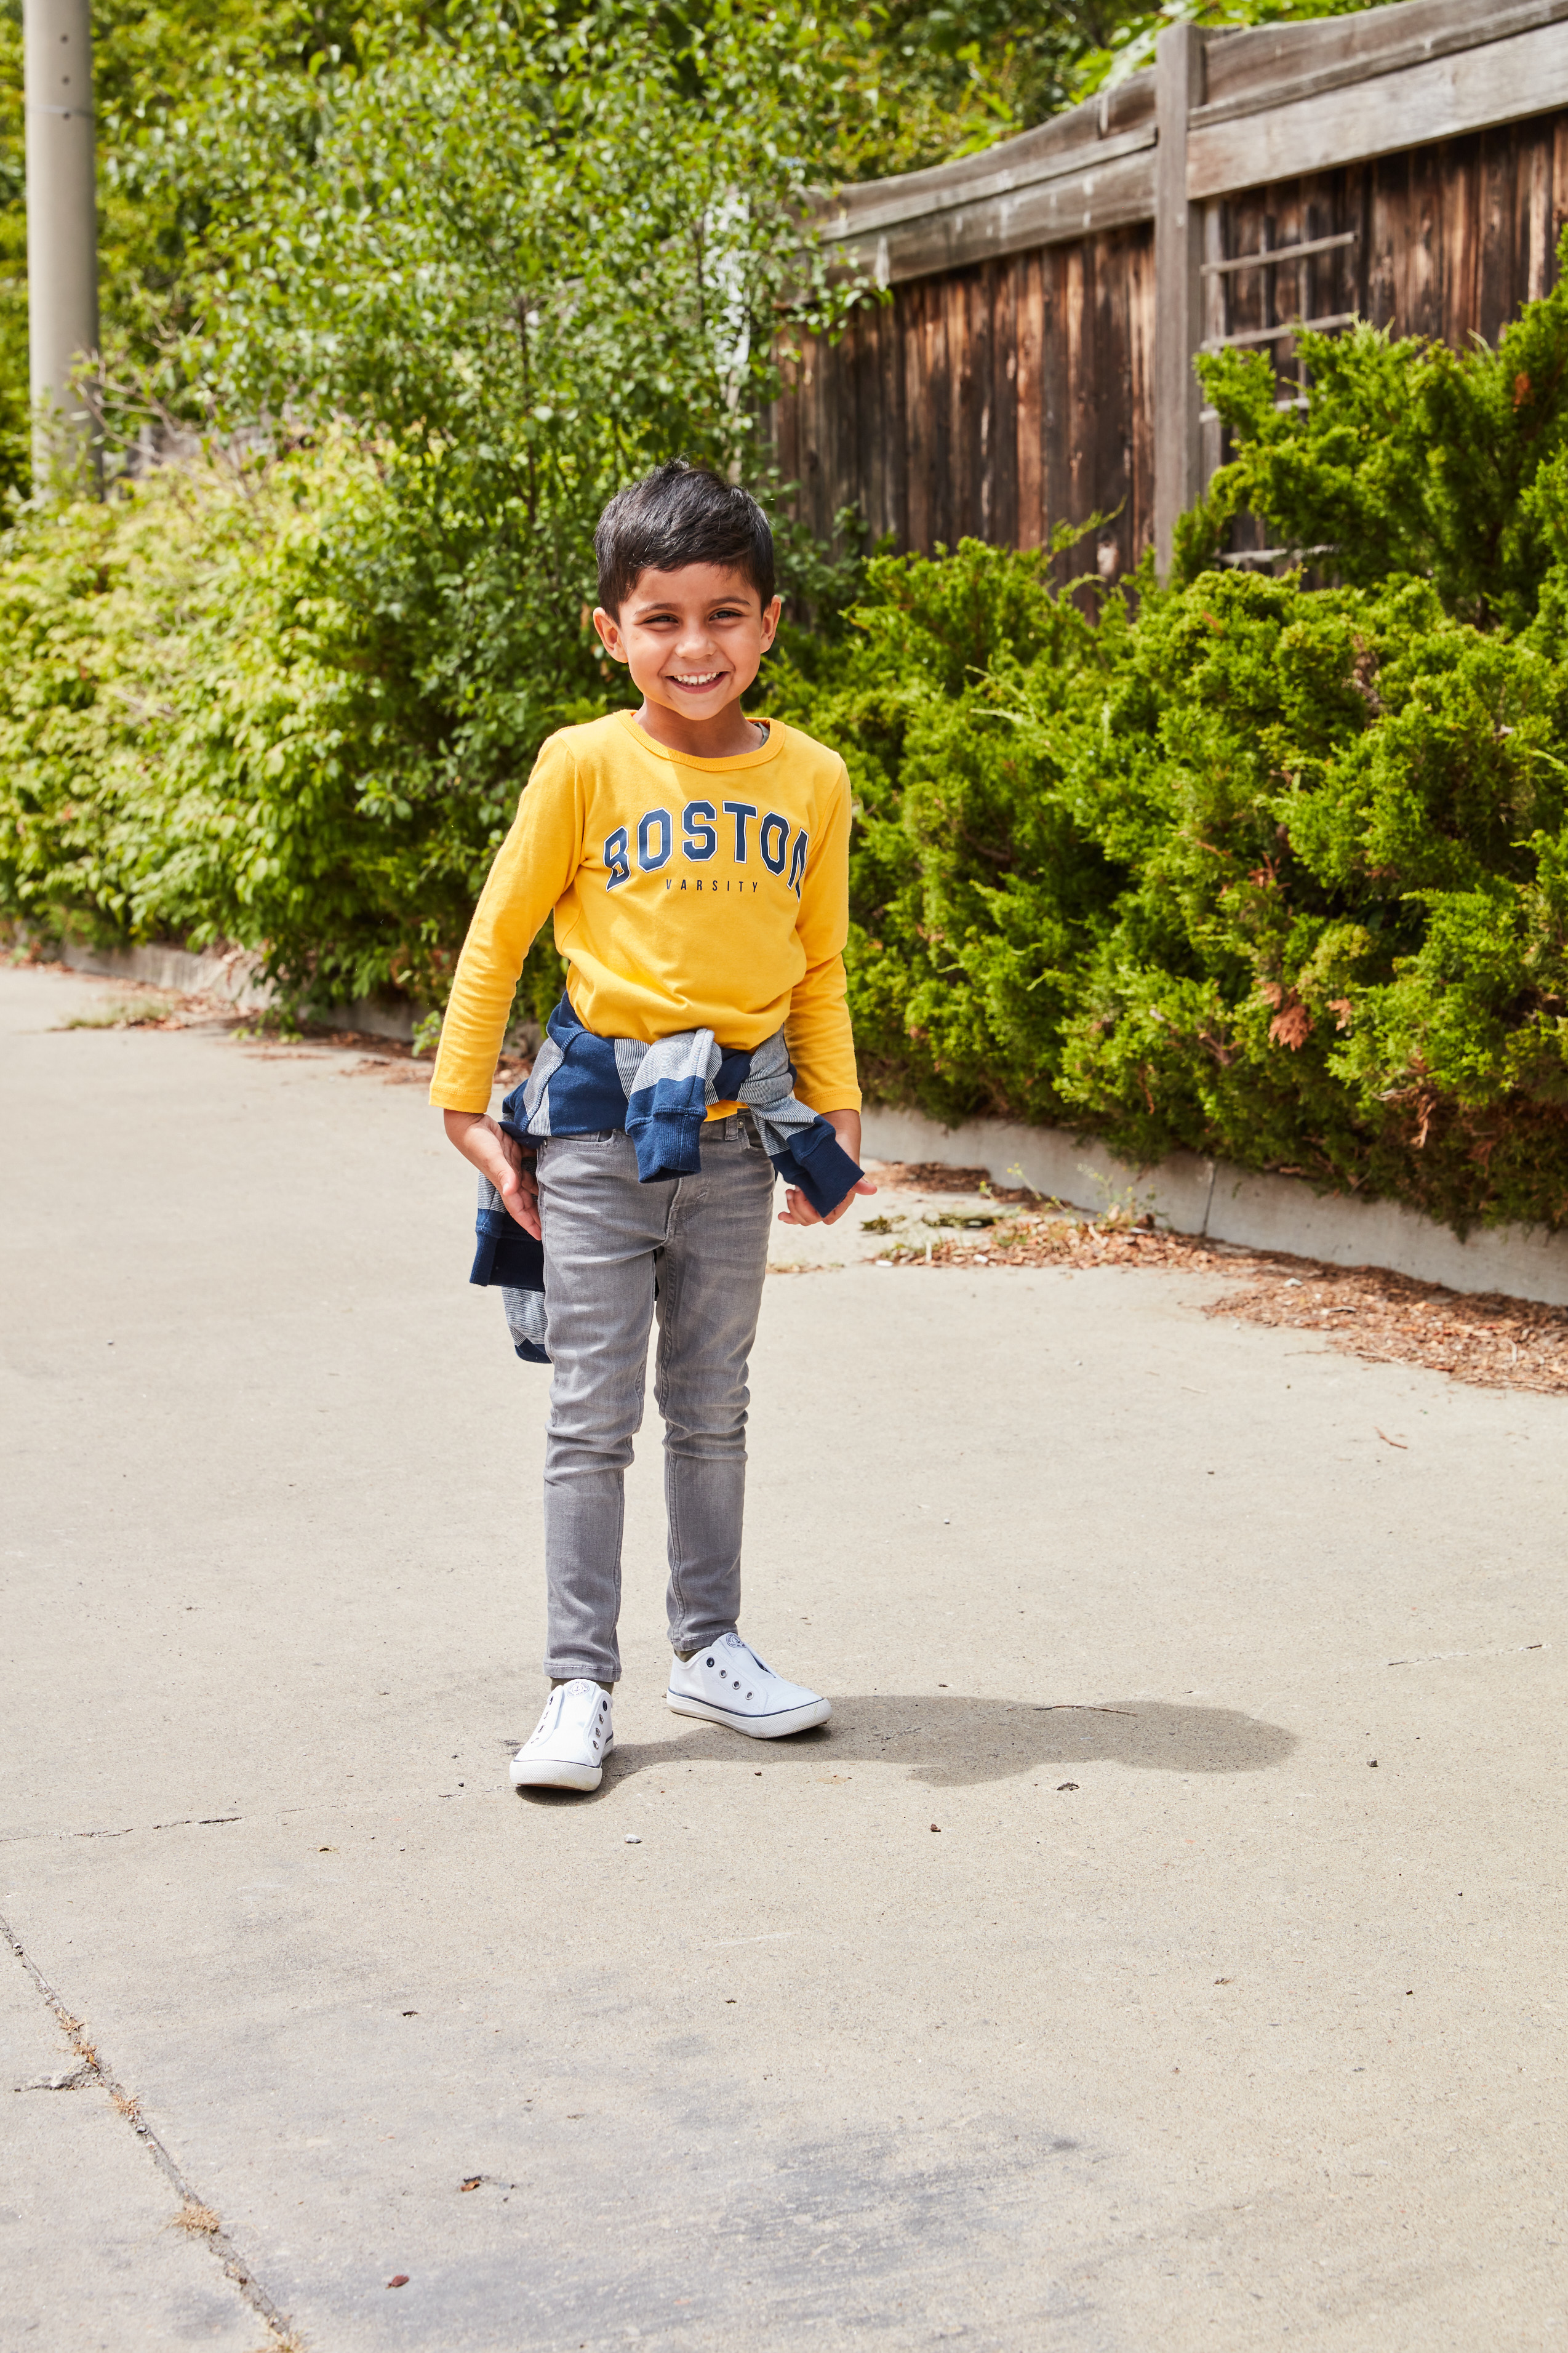 Young boy wearing a "Boston" varsity shirt on sidewalk